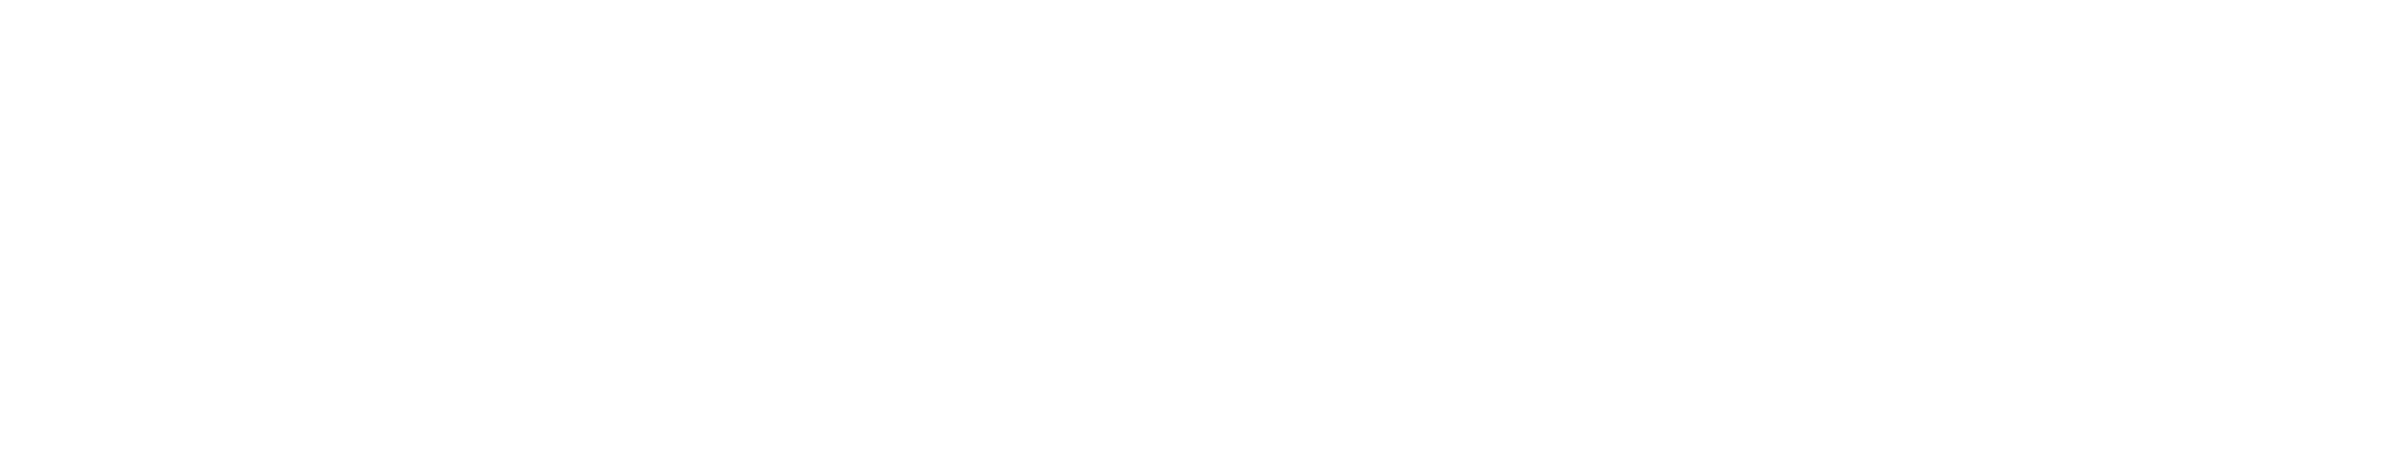 ELLI Logo